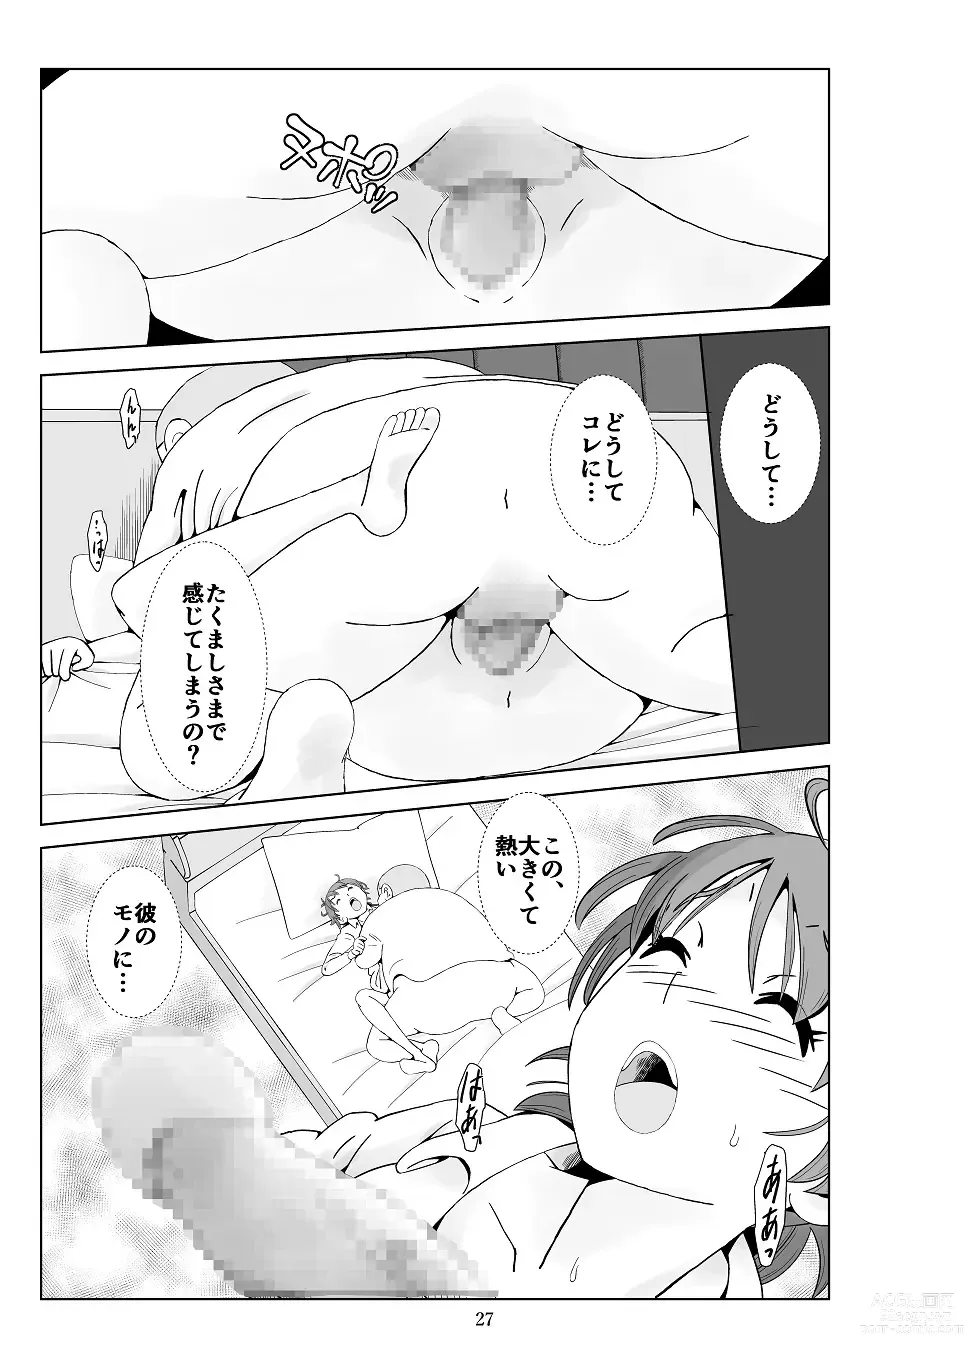 Page 28 of doujinshi Futoshi 3